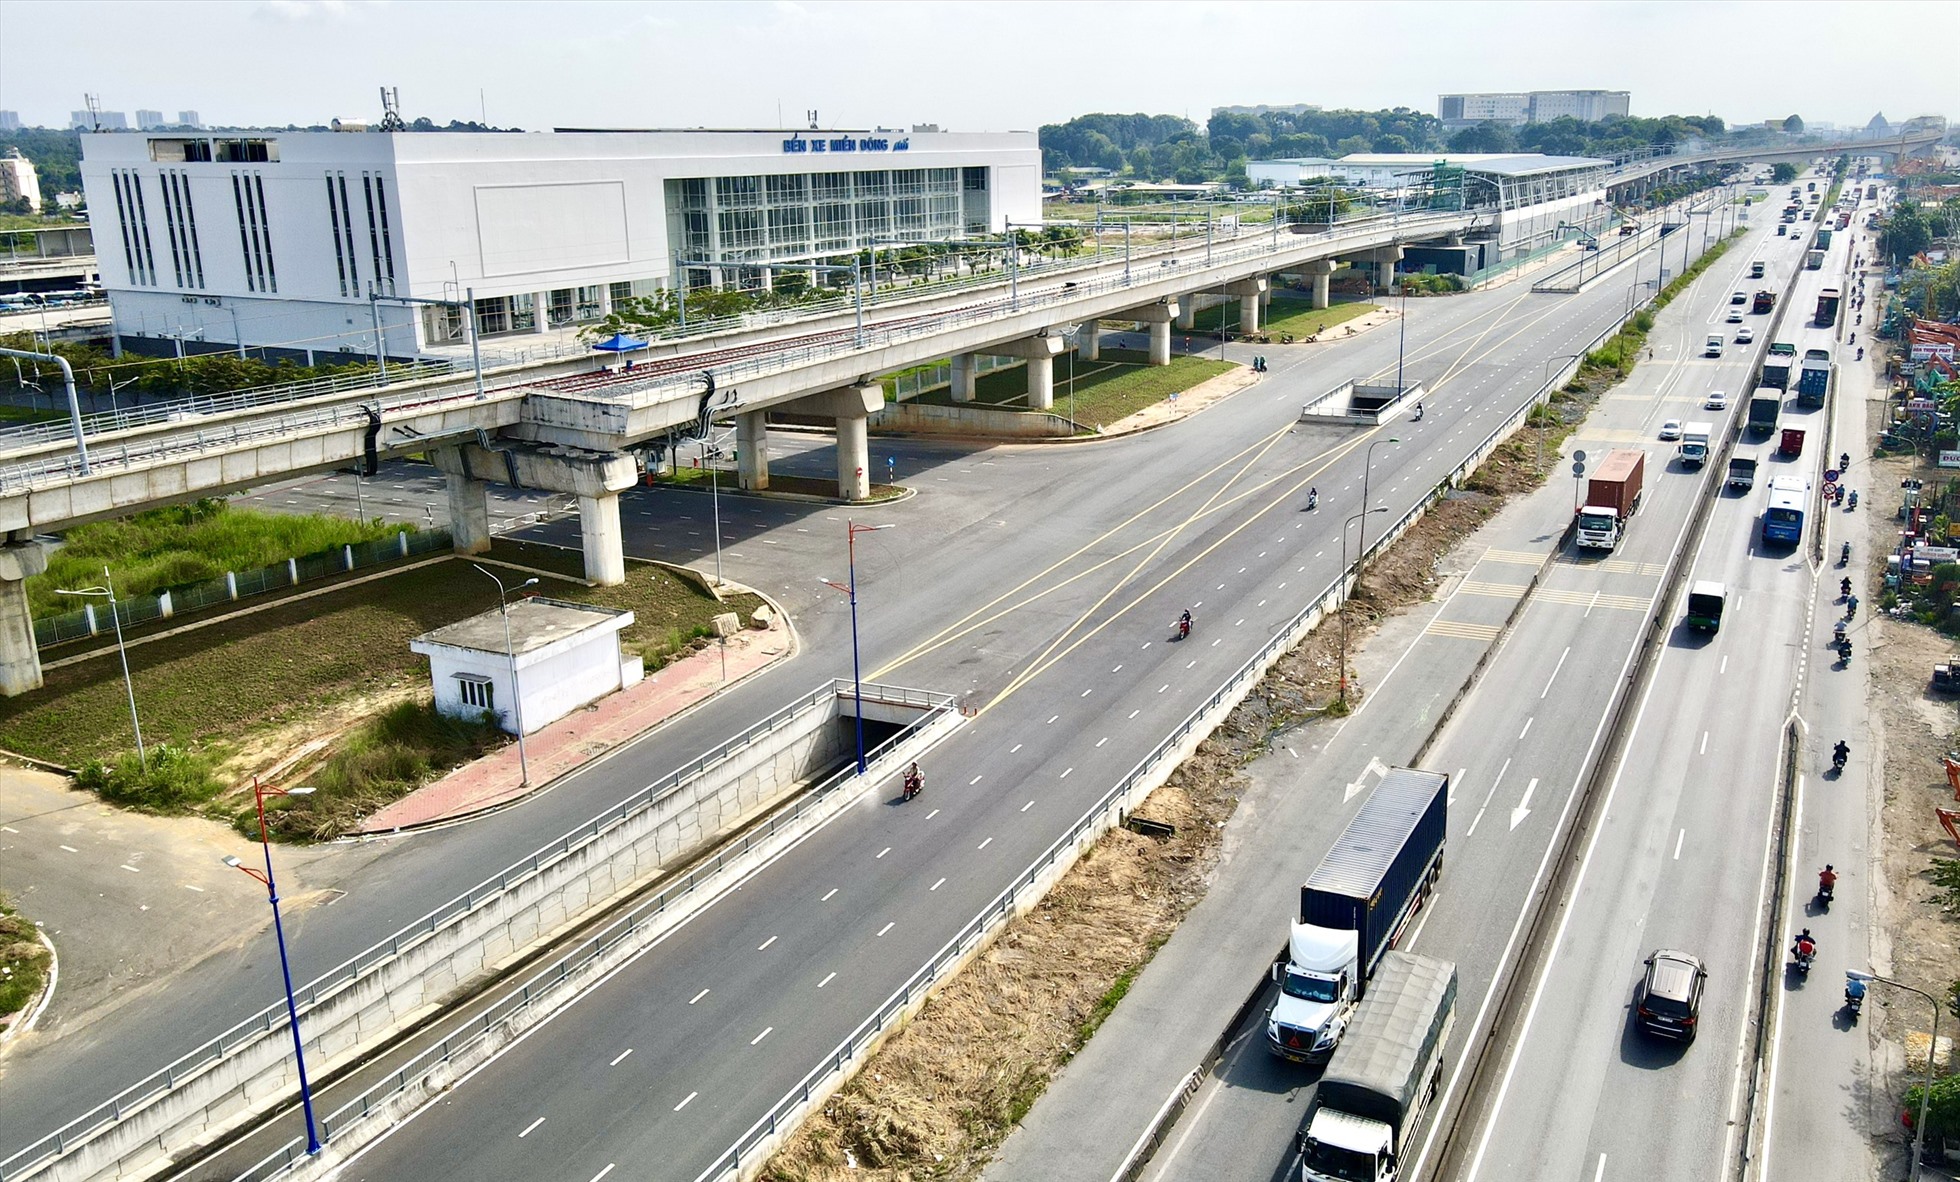 Hầm chui dài 670m, rộng 8m, nằm bên phải quốc lộ 1, hướng từ TP.HCM đi Đồng Nai. Đây là hạng mục chính của dự án cầu vượt trước bến xe Miền Đông mới, tổng mức đầu tư hơn 437 tỉ đồng.